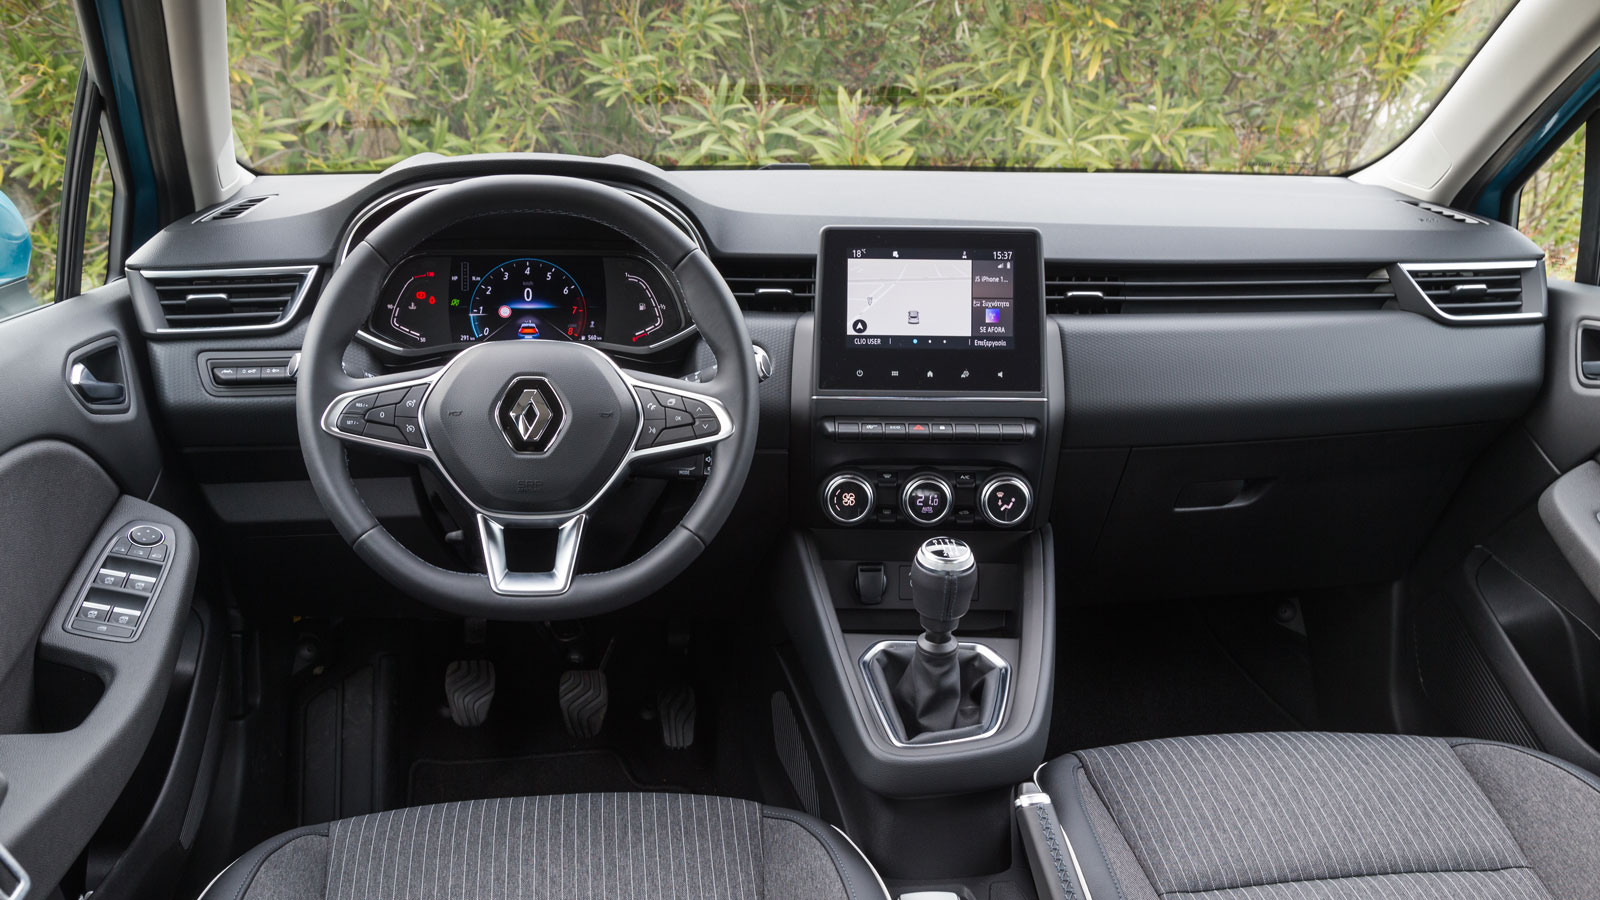 Το Renault Clio χωράει άνετα 4 ενήλικες επιβάτες και έχει διαθέσιμο χώρο αποσκευών 391 λίτρα